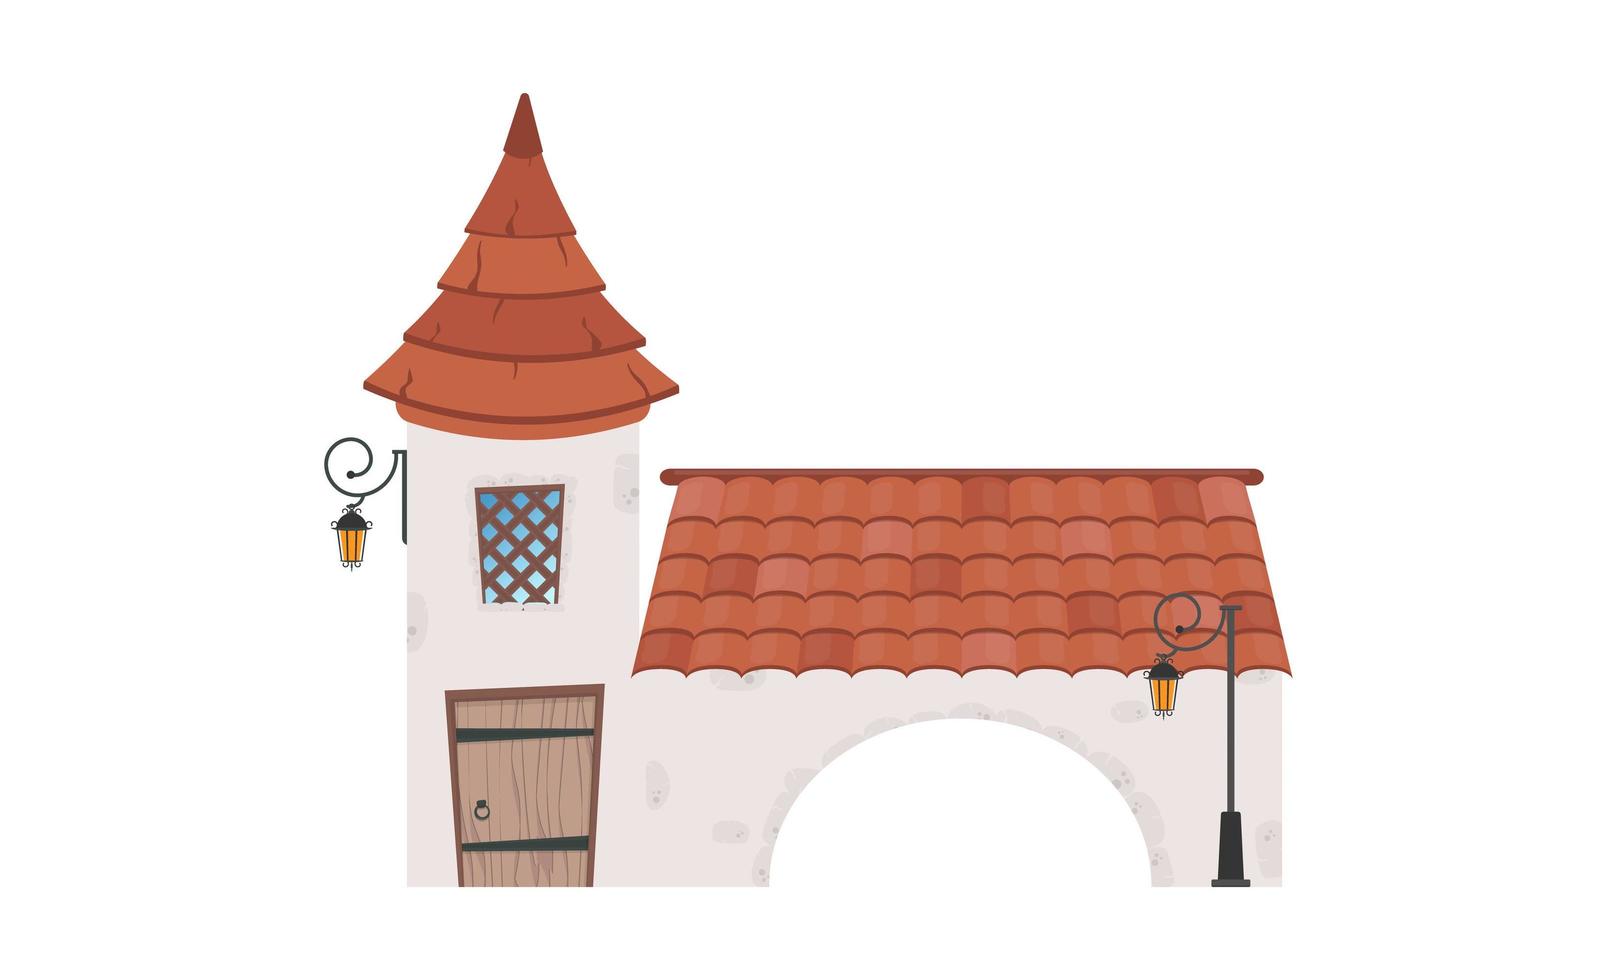 casa con una torre y un arco. edificio de piedra con ventanas, puerta y techo. estilo de dibujos animados para el diseño de juegos, postales y libros. aislado. vector